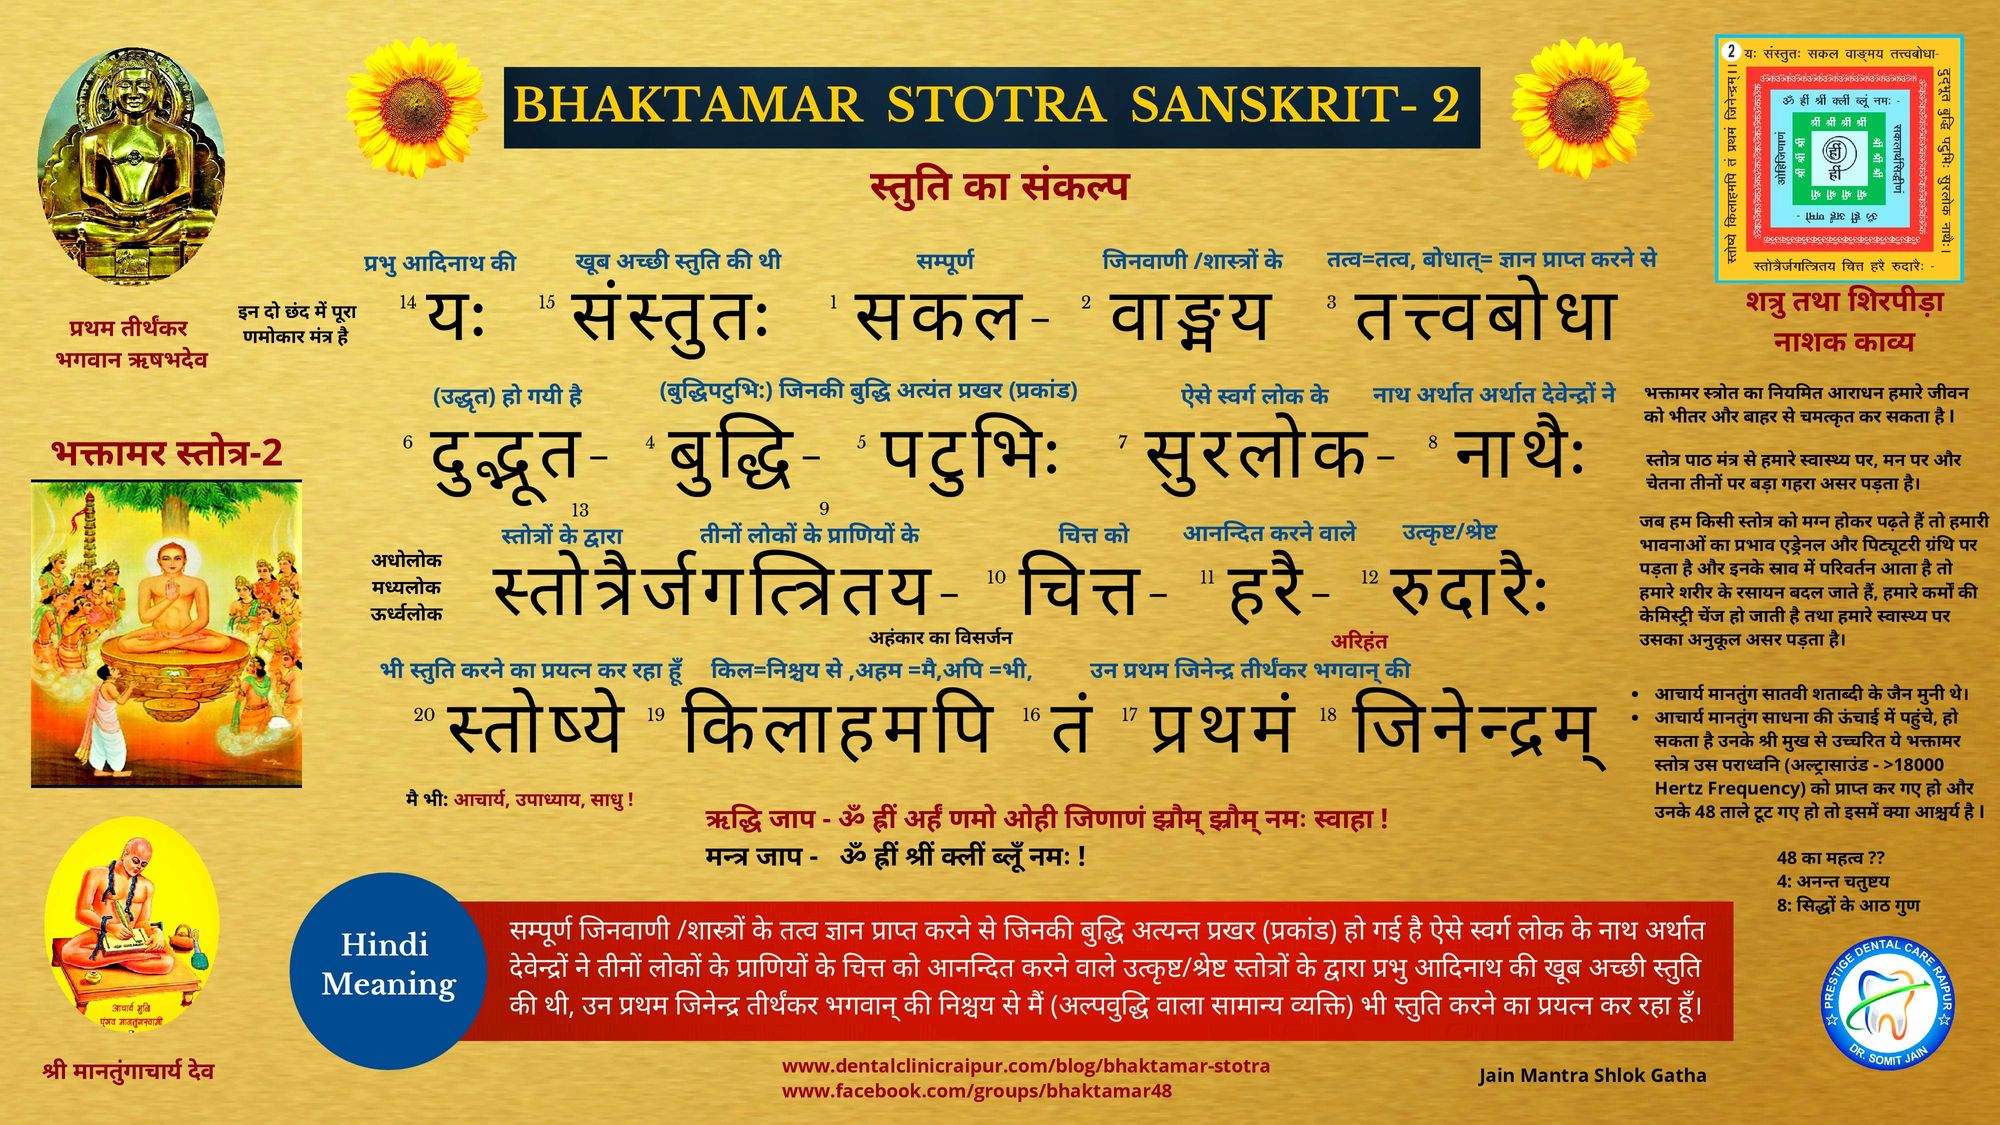 Bhaktamar stotra-2 Hindi Meaning